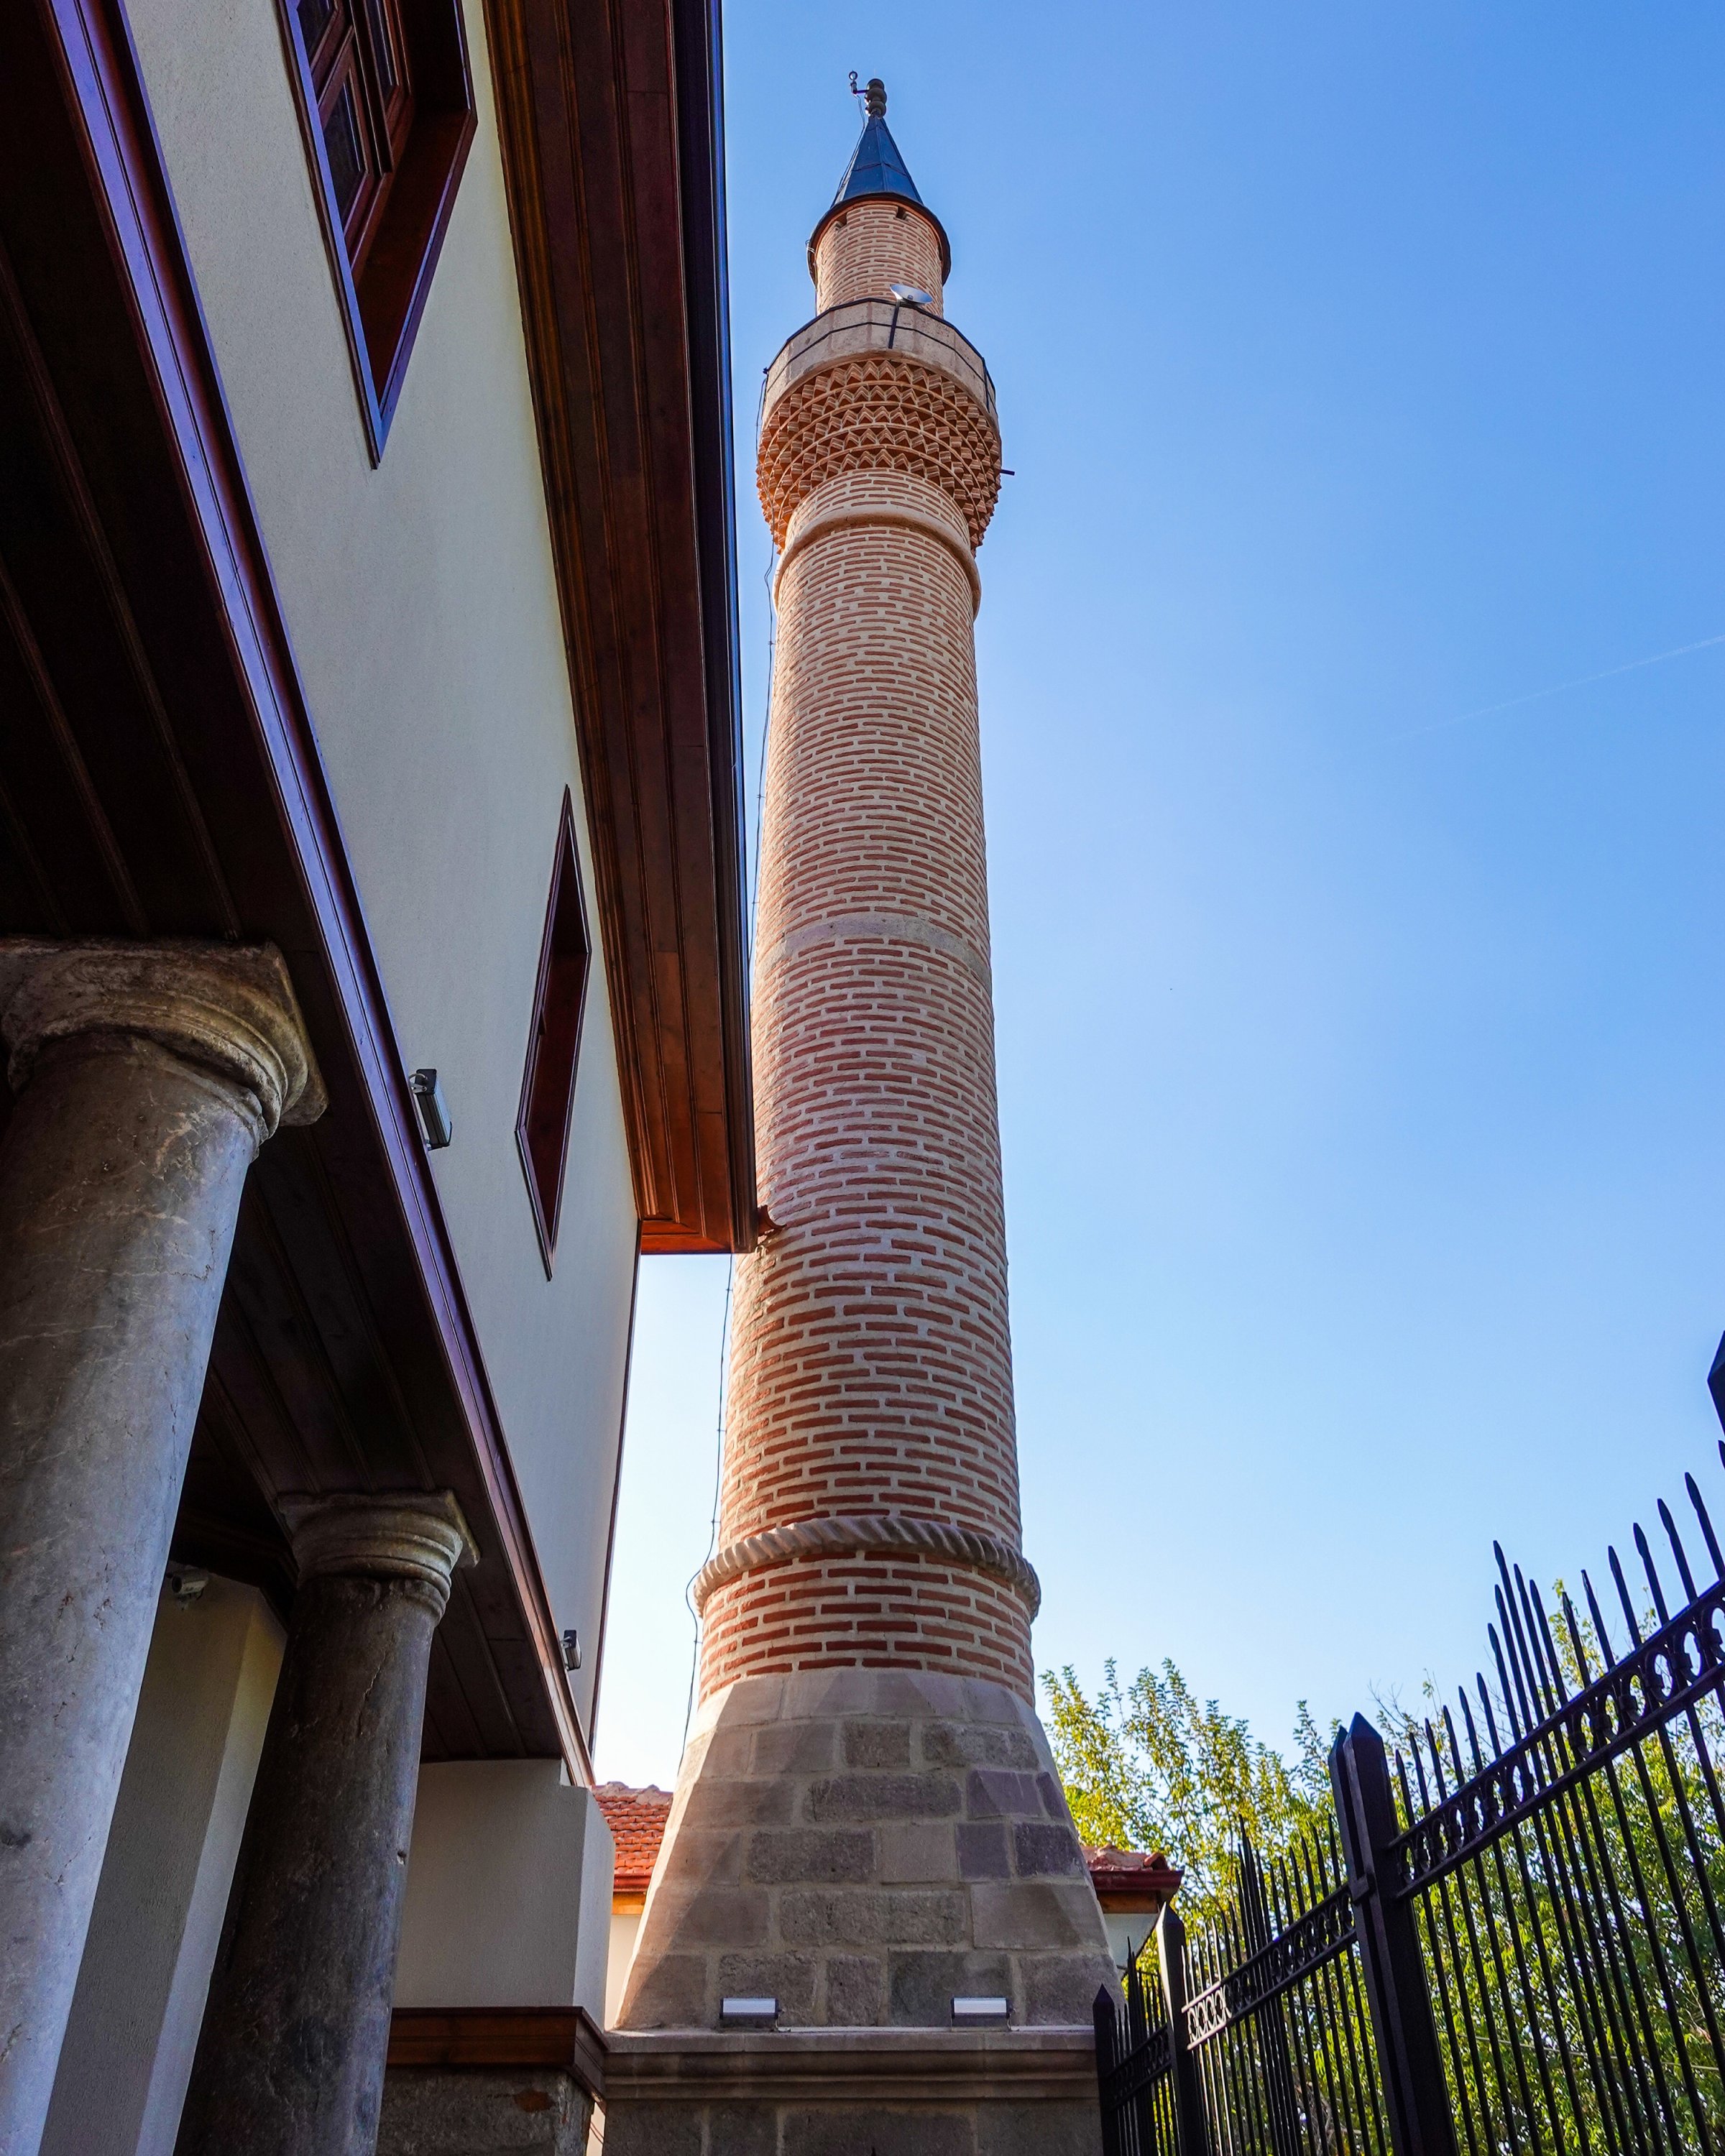   La tour du minaret de la mosquée du Sultan Alaaddin.  (Photo par Argun Konuk)